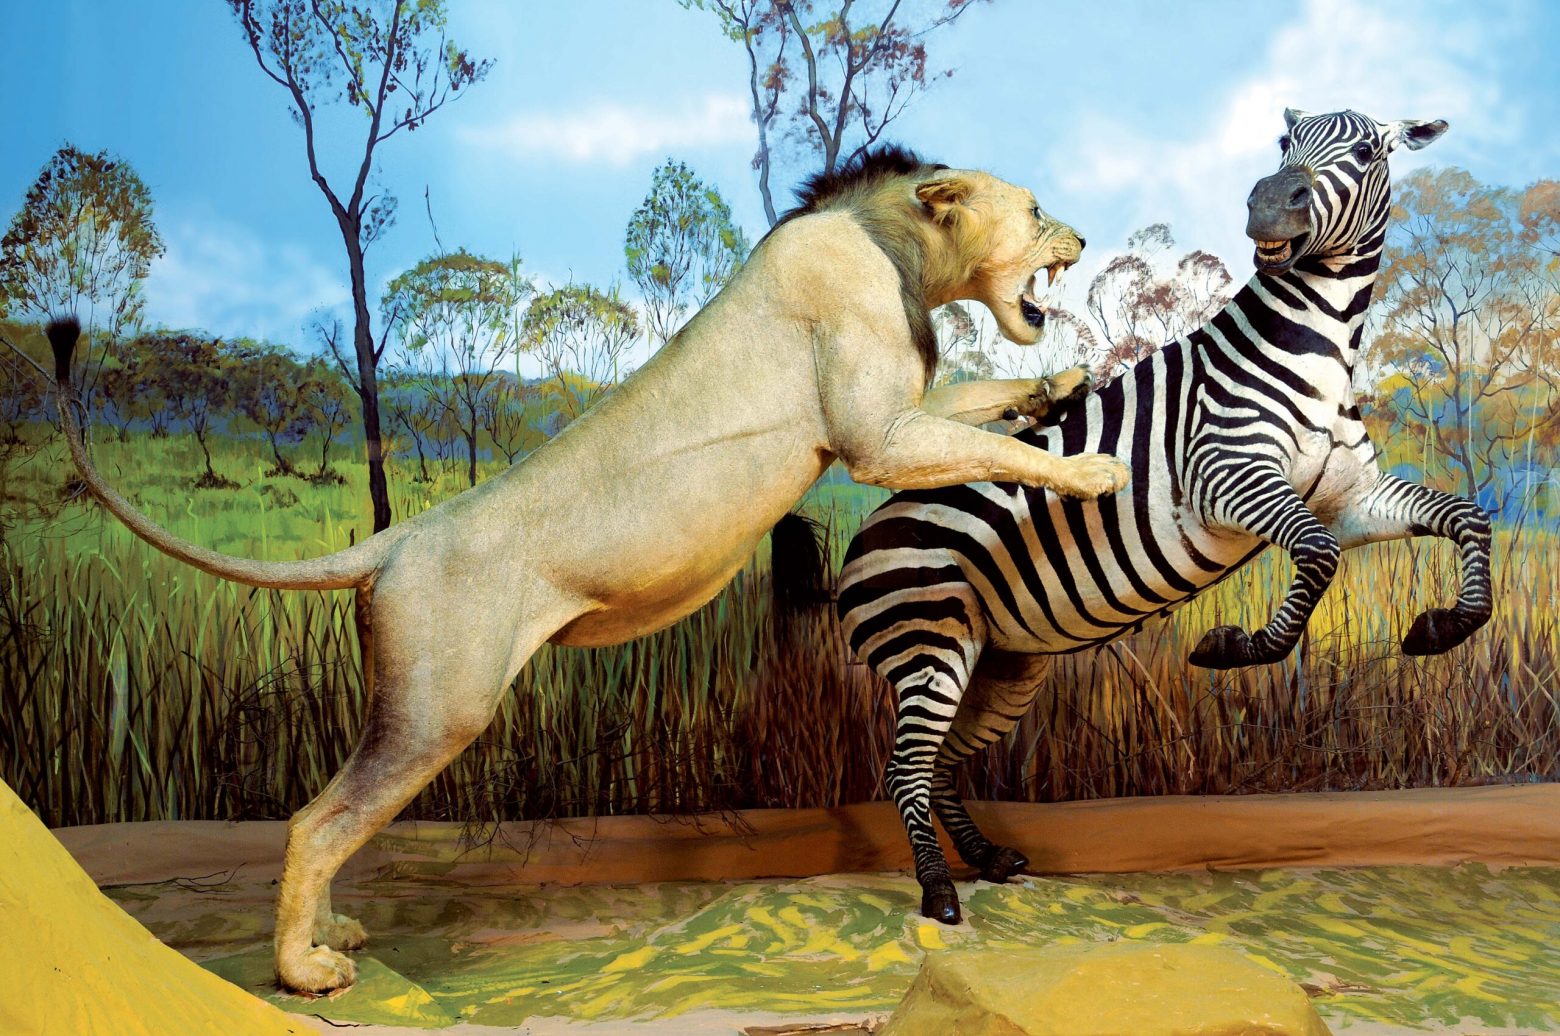 Μουσείο Ζωολογίας ΕΚΠΑ: Μια άγνωστη αλλά εντυπωσιακή συλλογή ανοίγει το Σαββατοκύριακο